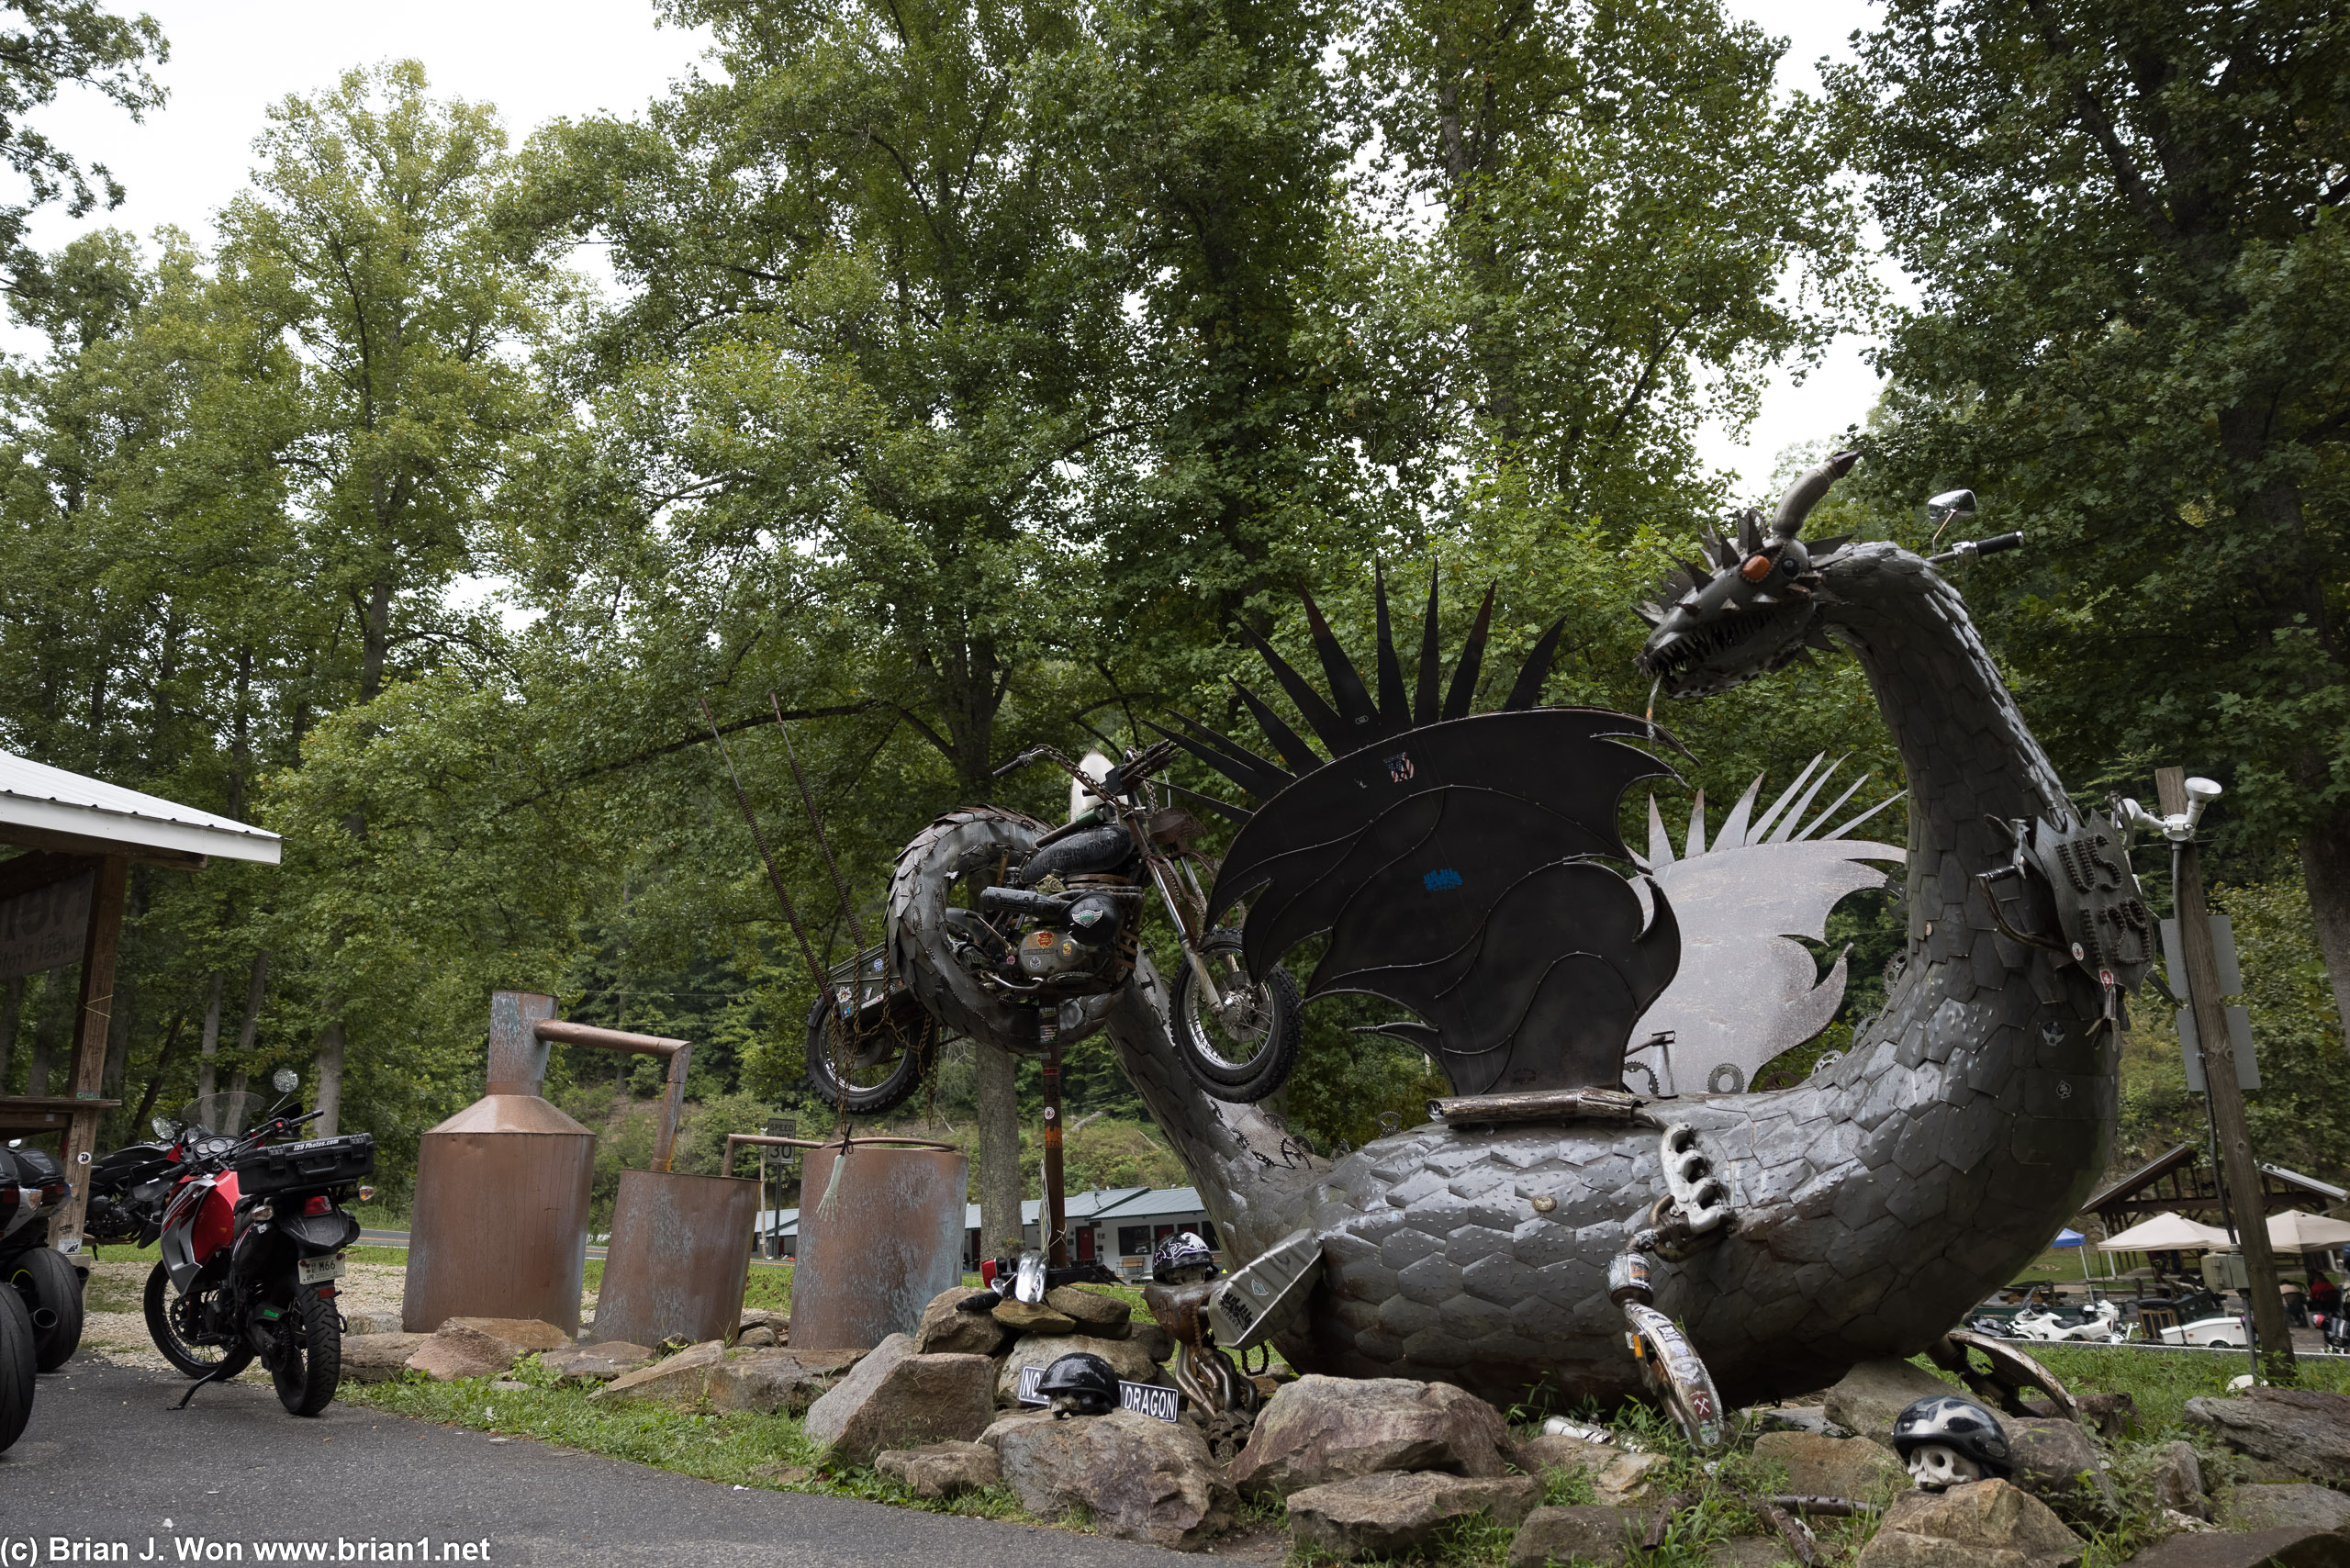 The dragon statue.